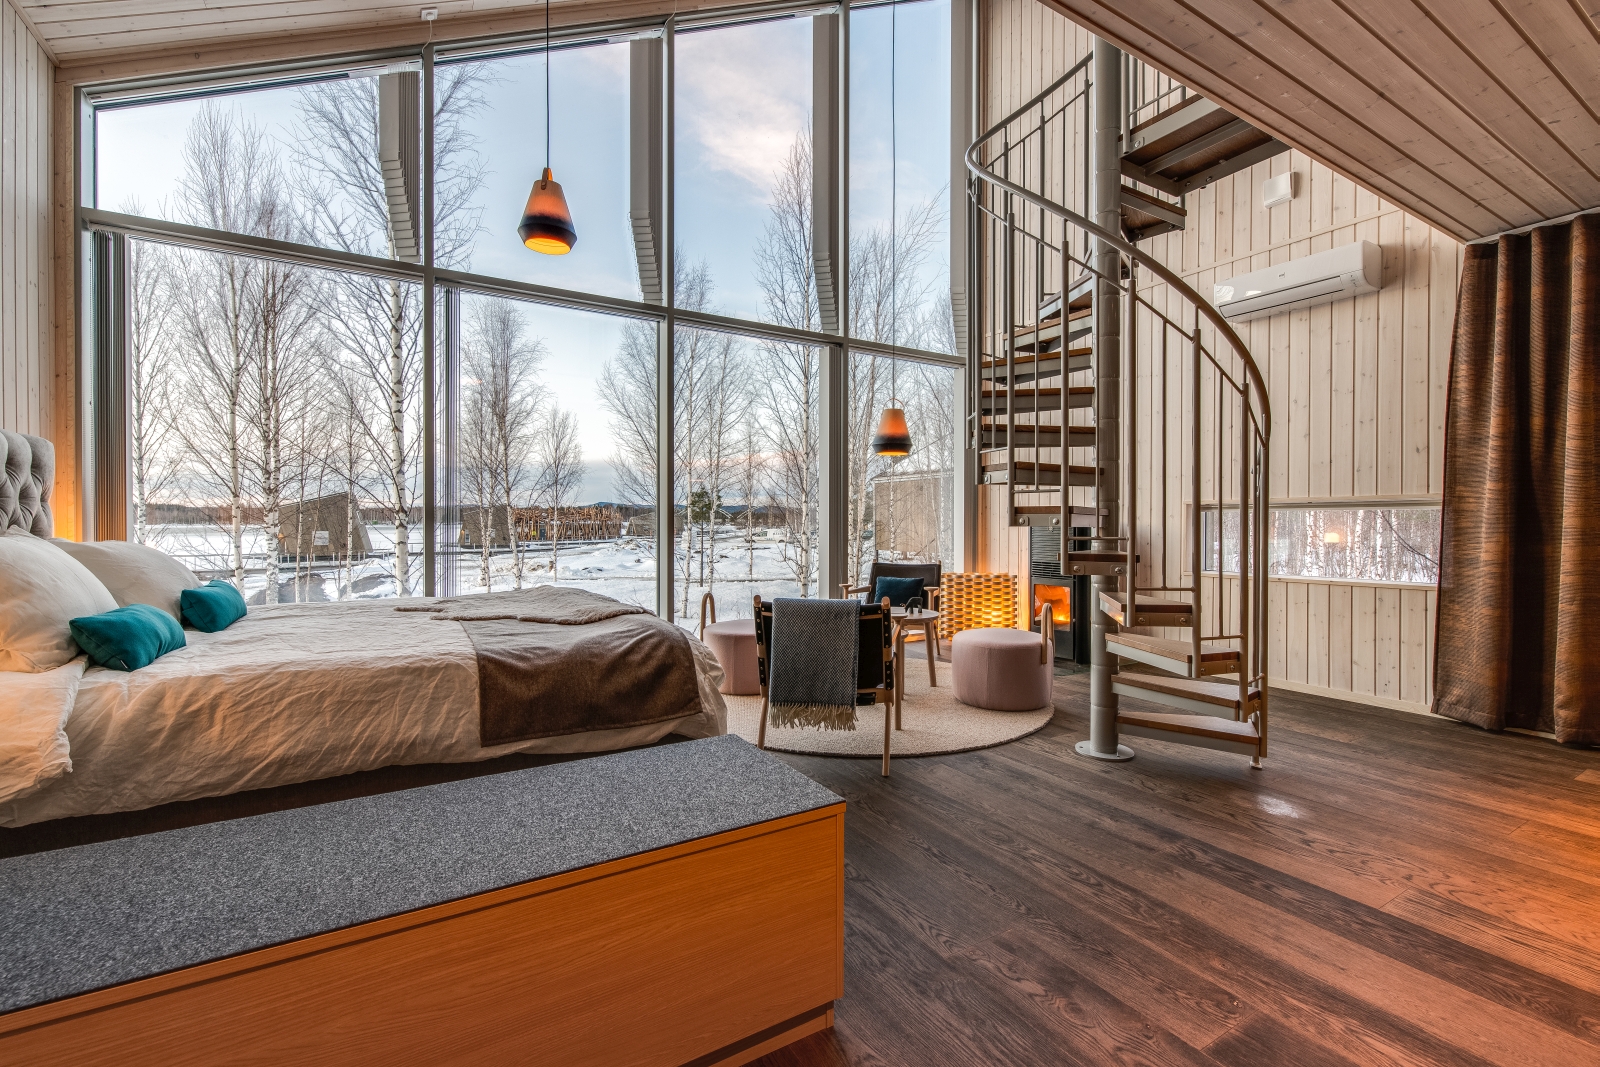 Bedroom at Arctic Baths in Sweden